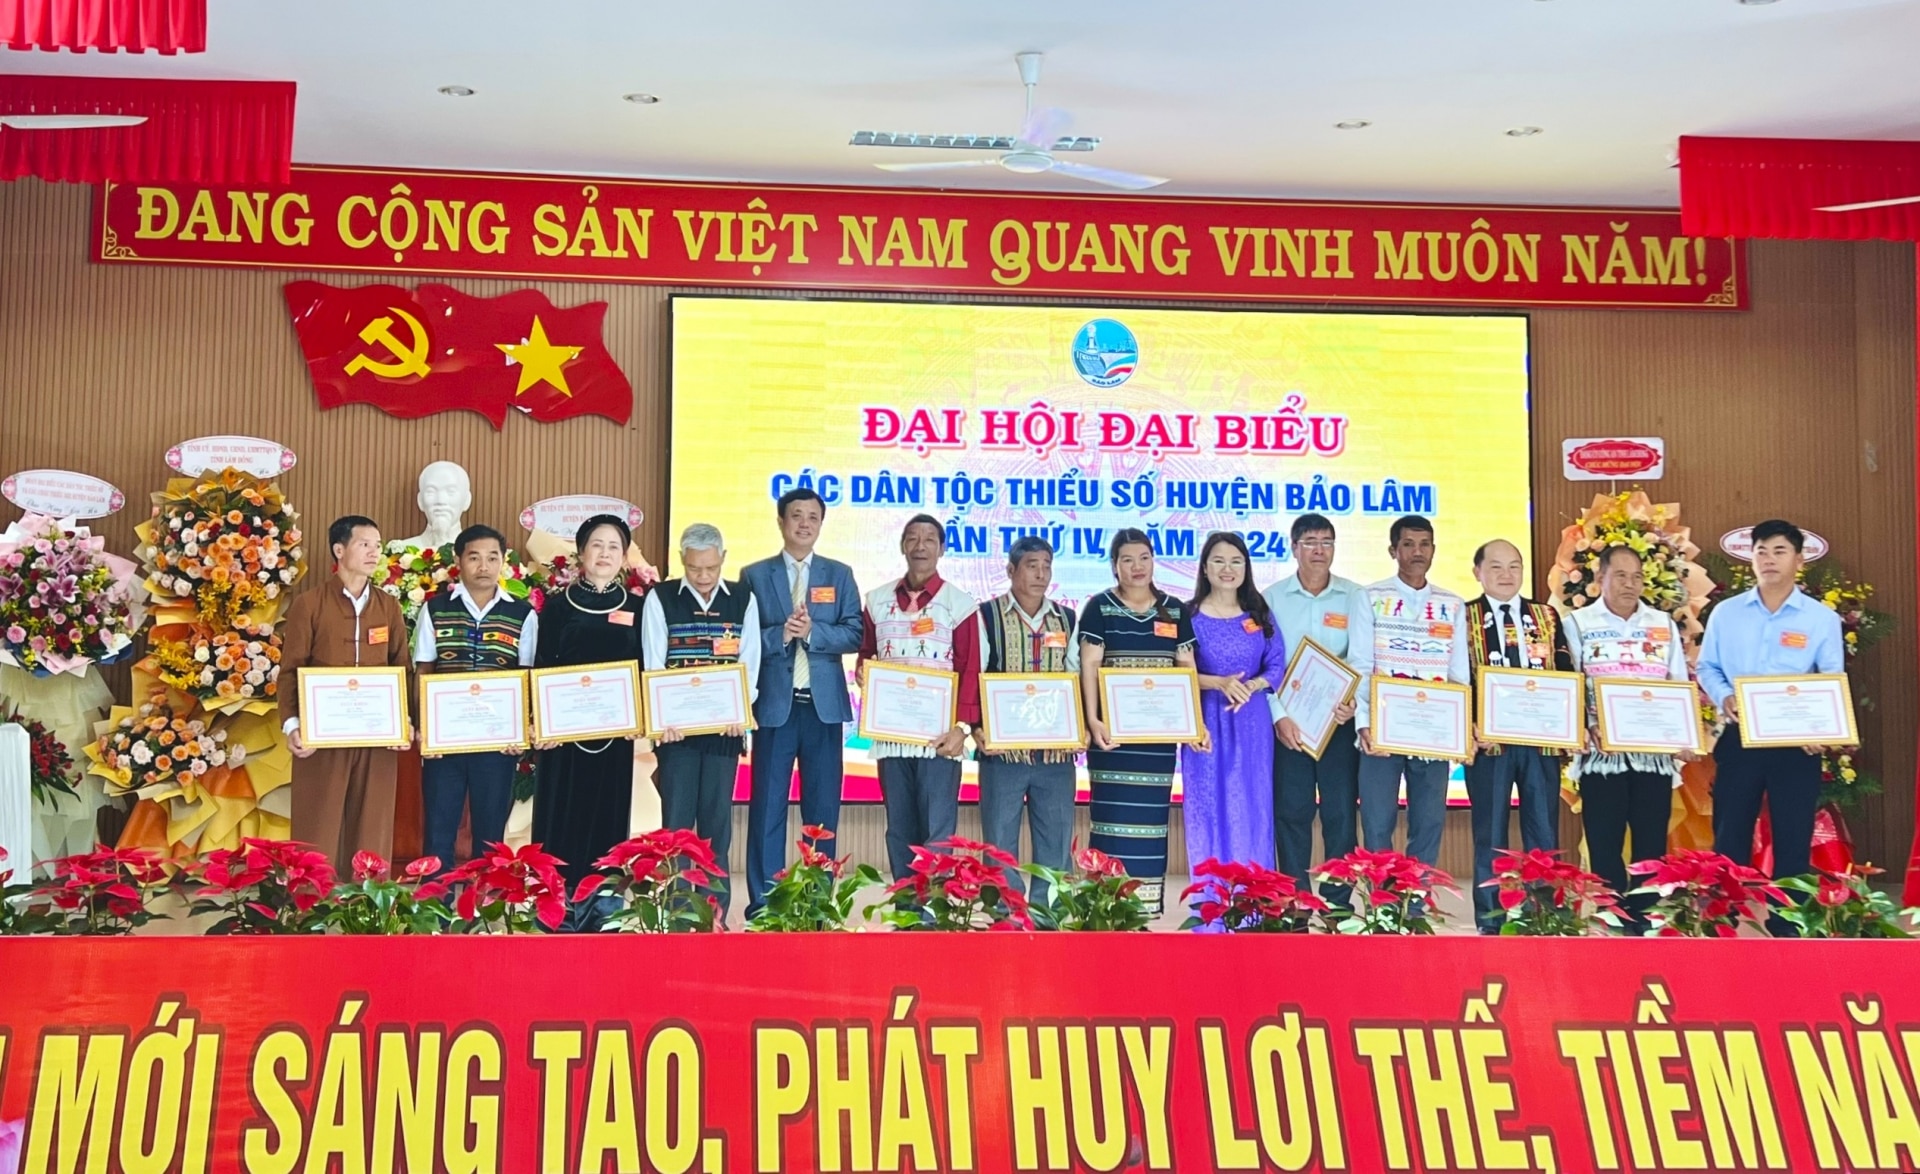 Trao tặng giấy khen của UBND huyện Bảo Lâm cho các tập thể, cá nhân